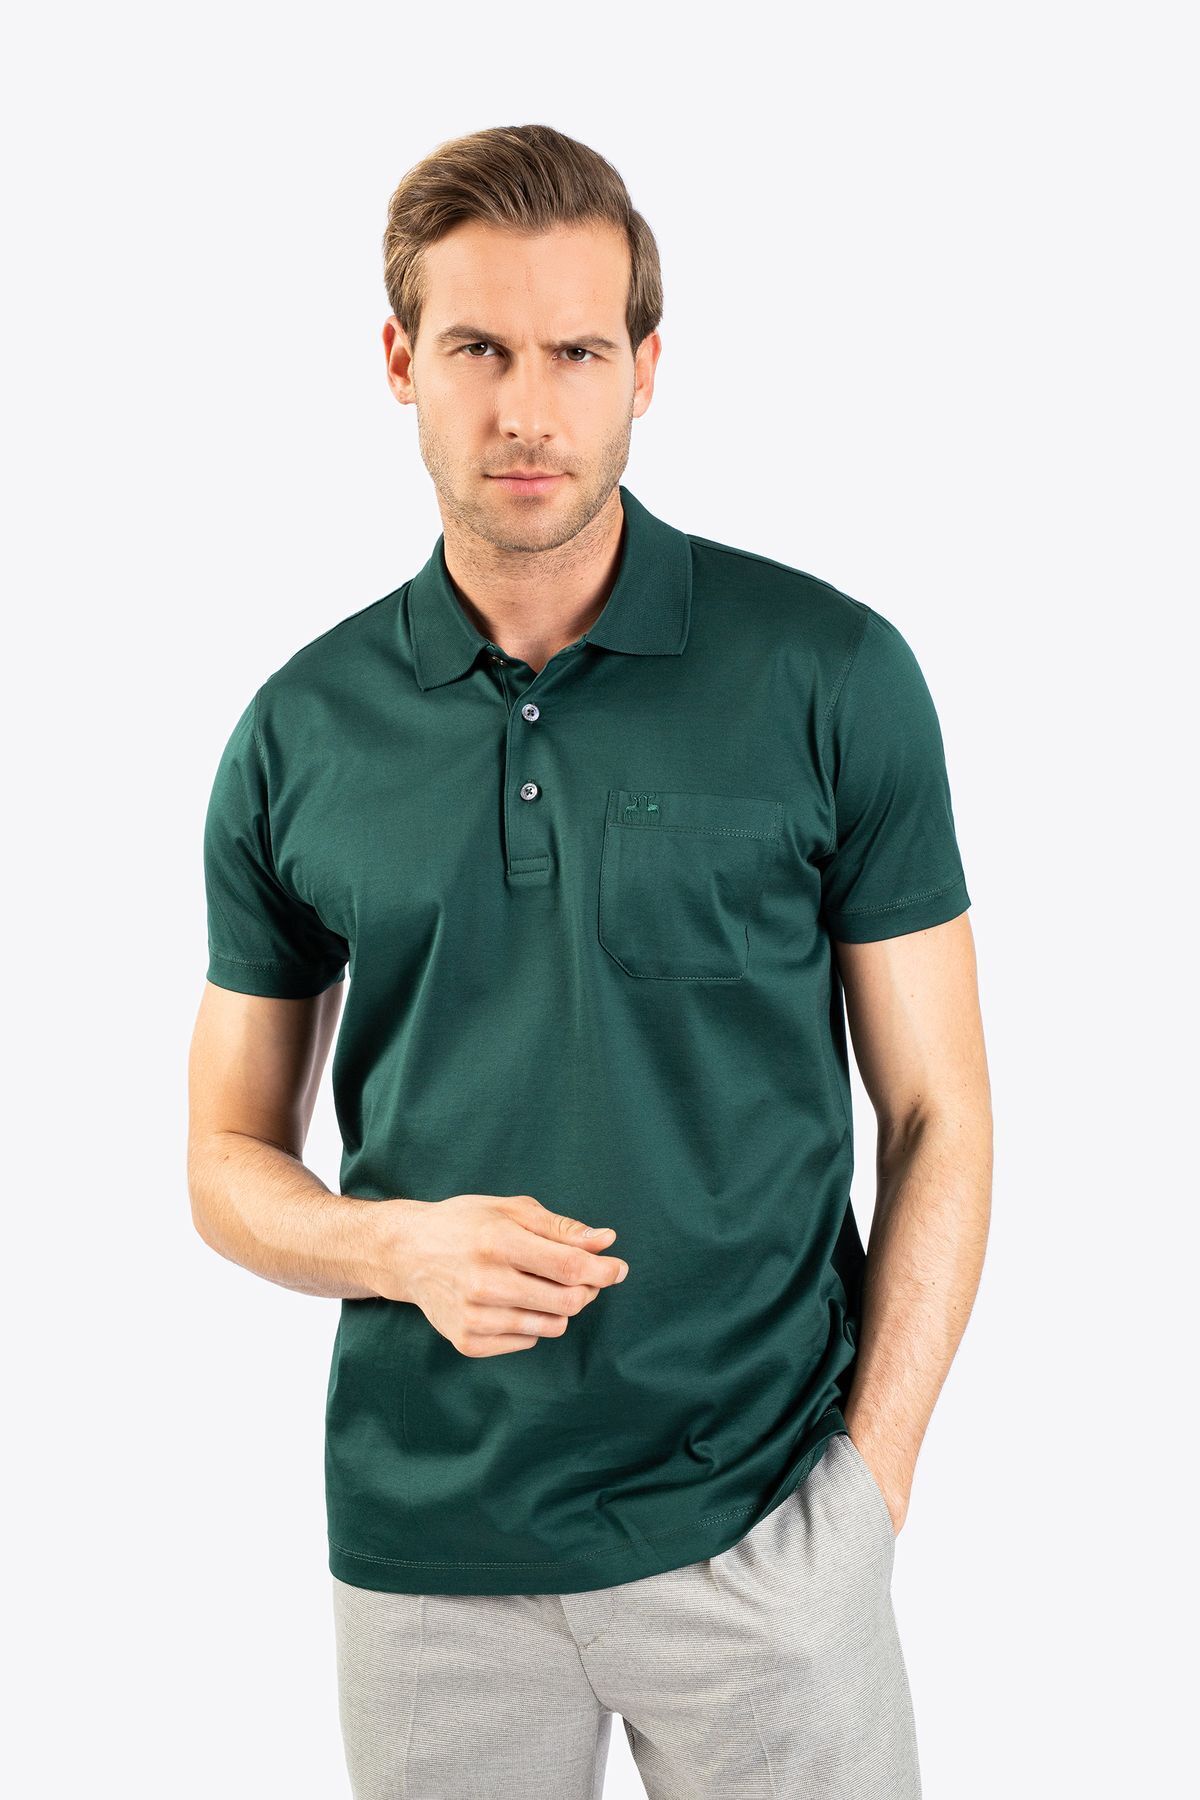 Karaca Erkek Regular Fıt Polo Yaka Tişört-Koyu Yeşil